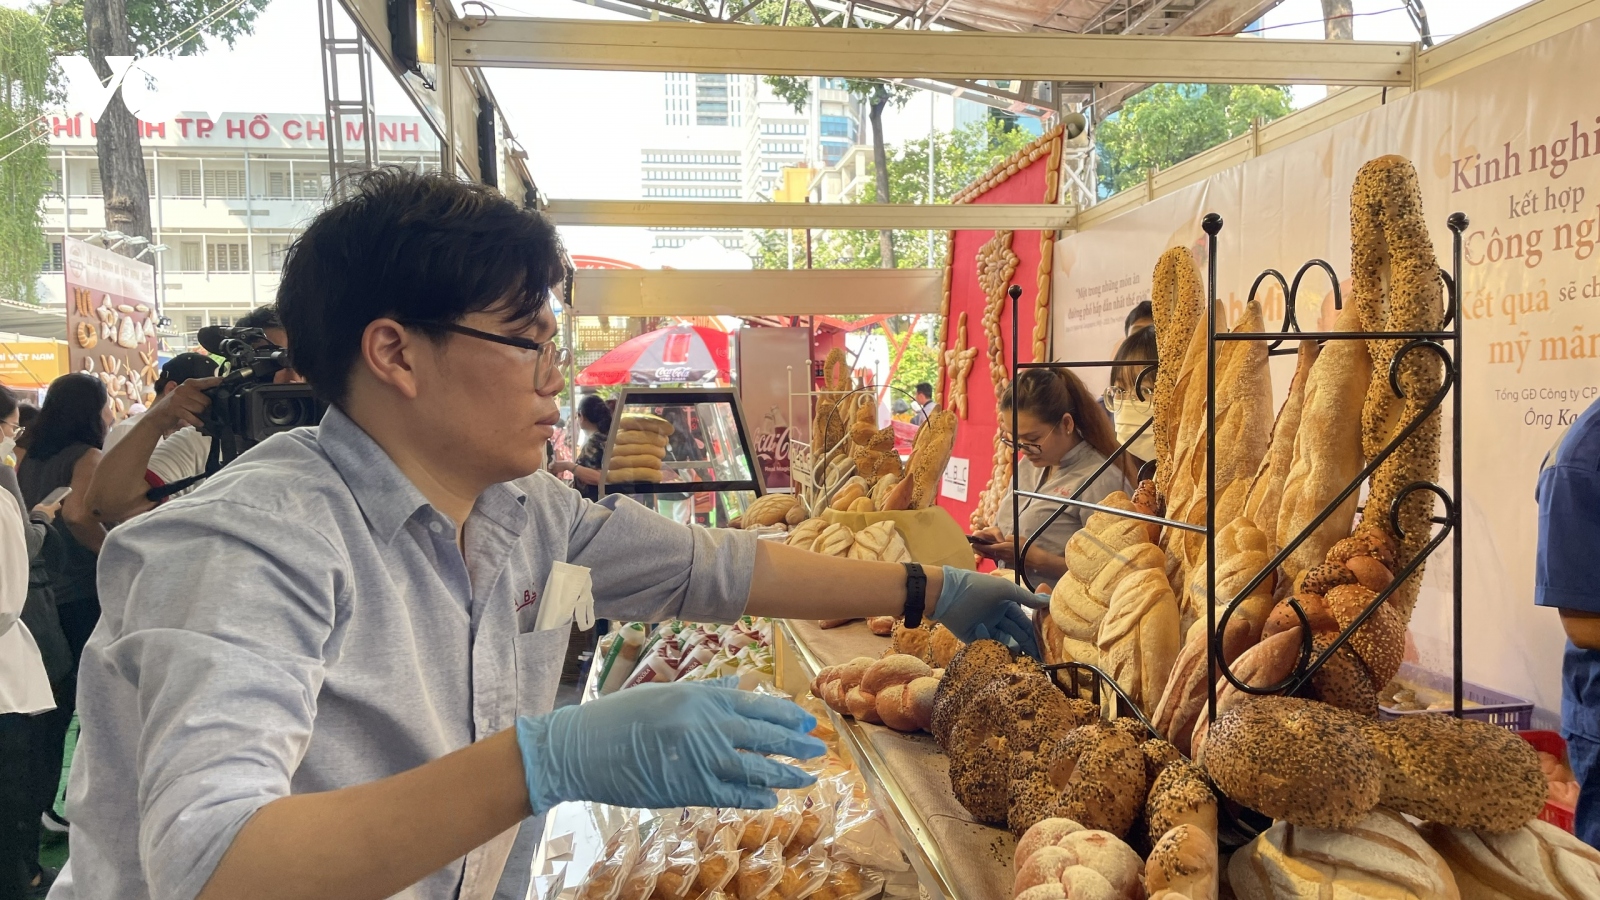 Lễ hội Bánh mì ở TP.HCM thu hút hàng ngàn người dù chưa khai mạc